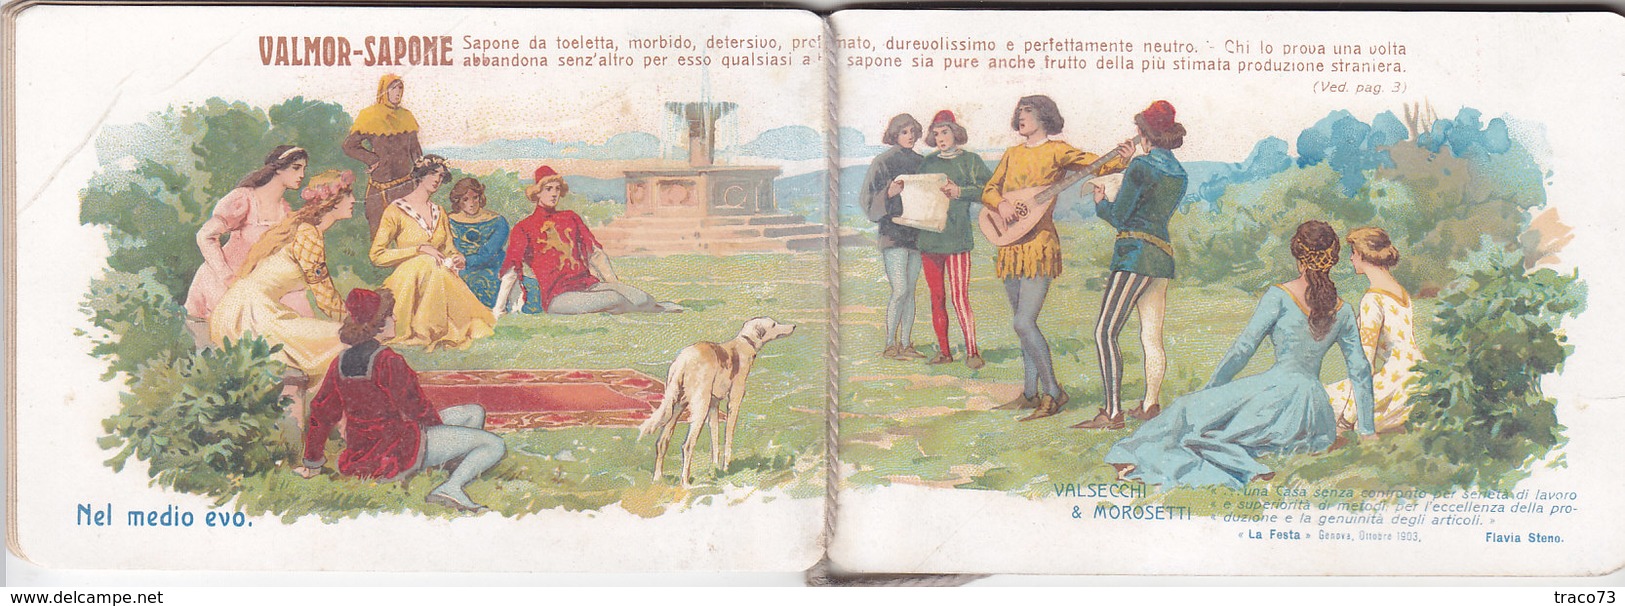 MILANO 1907 - Calendario Pubblicitario /  VALMOR - SAPONE _ VALSECCHI & MOROSETTI